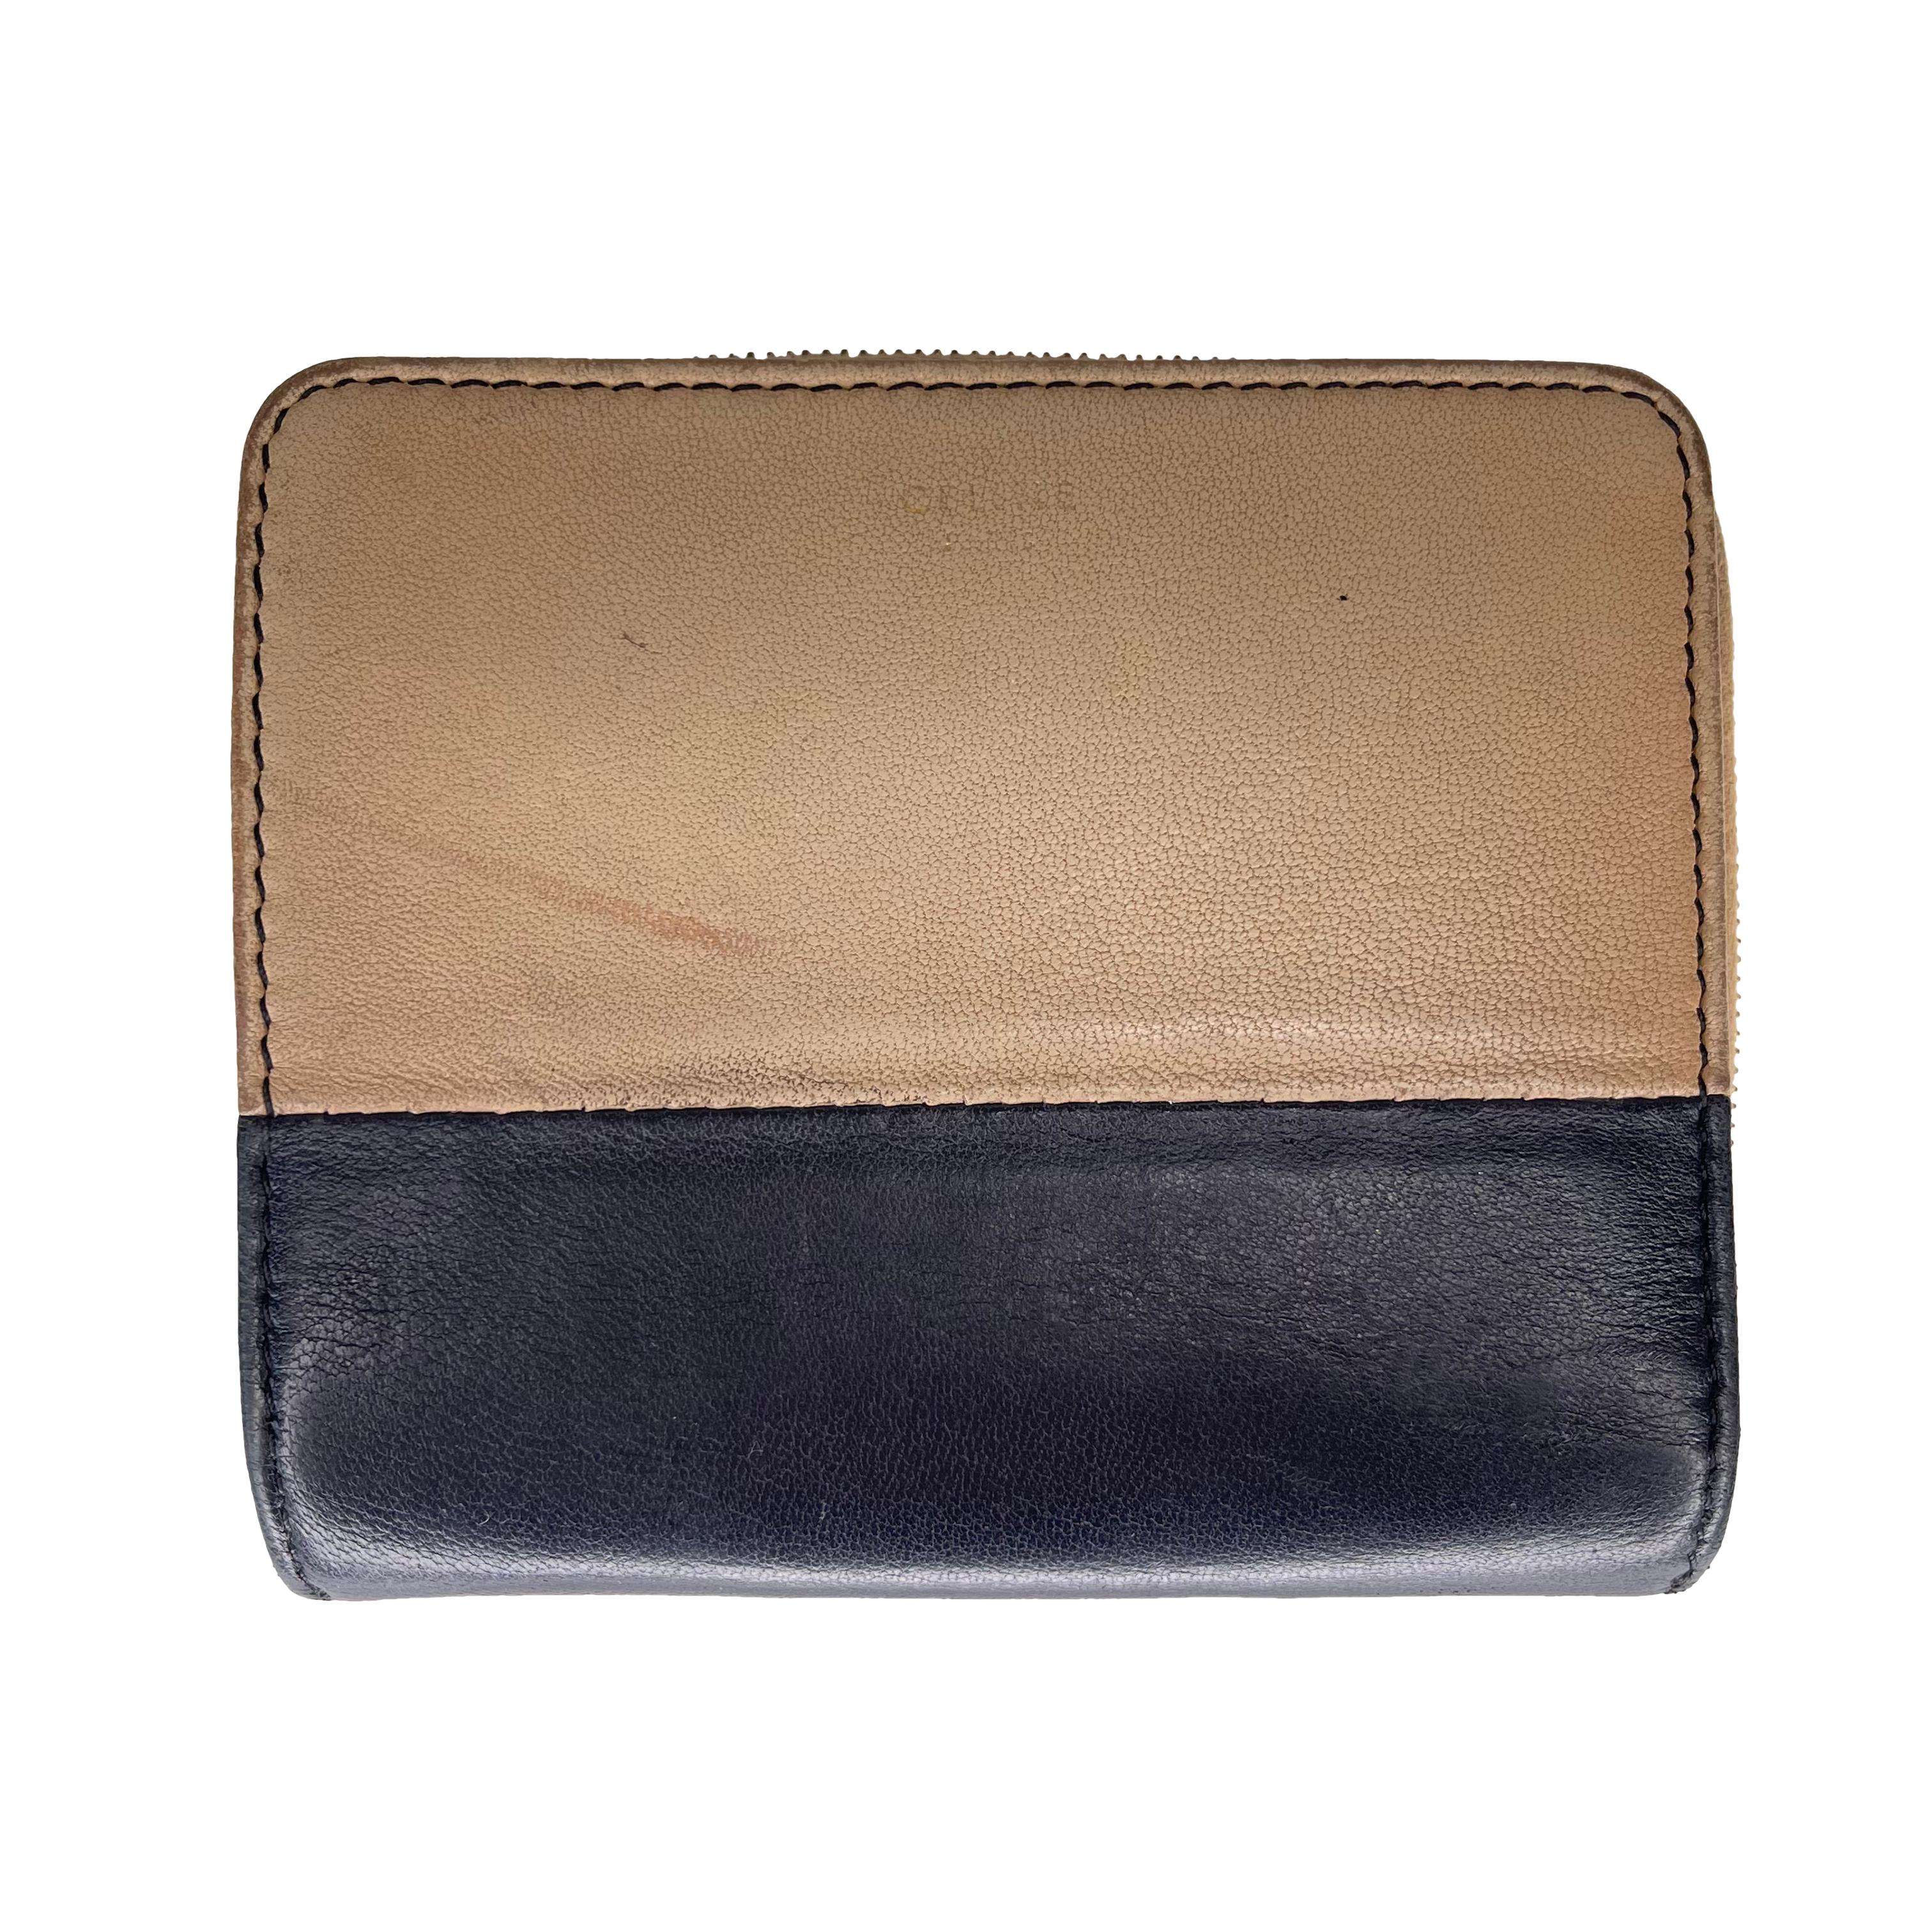 Celine Vintage Zip Around Beige Leather Compact Wallet